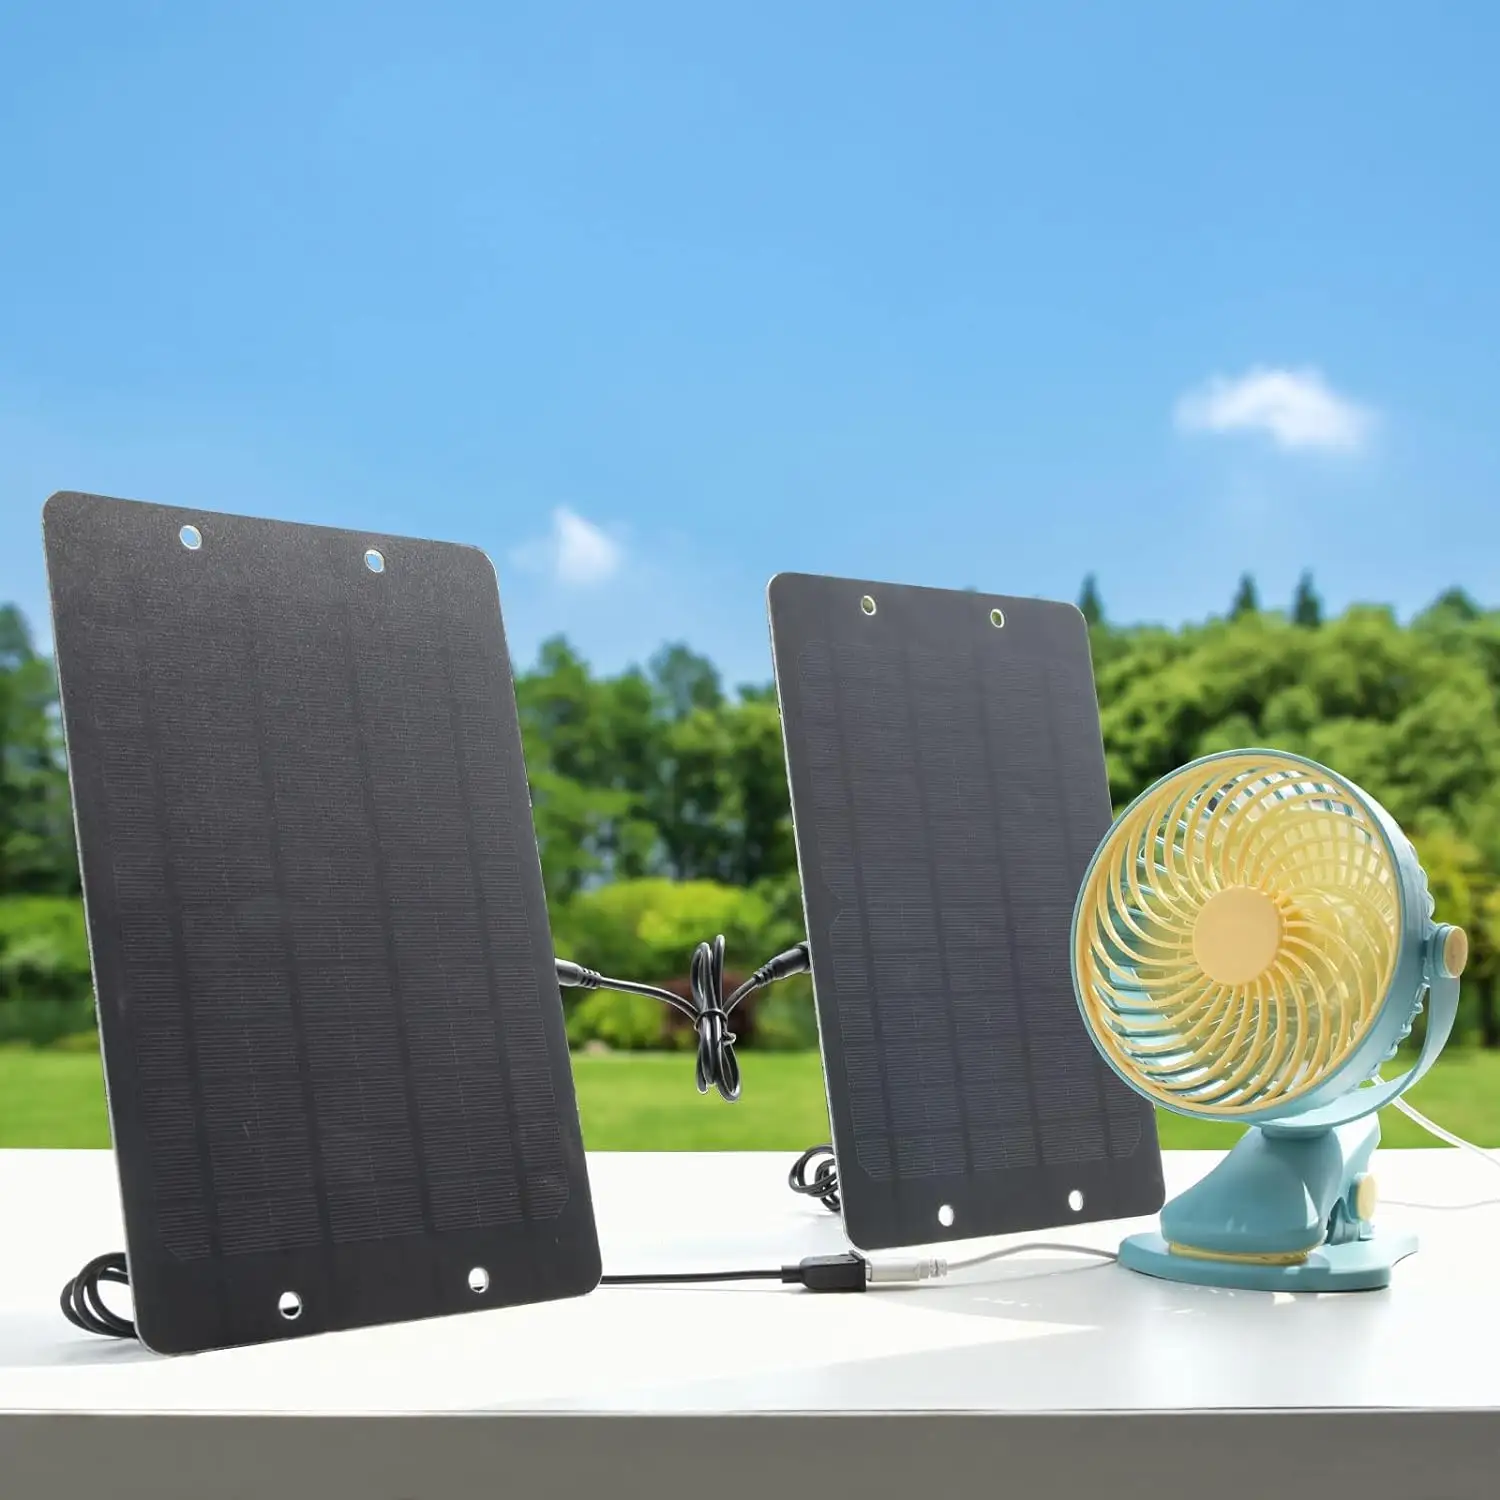 1 Вт 2 Вт 3 Вт 5 Вт 6 Вт 10 Вт 20 Вт Маленькая солнечная панель мини солнечная батарея для телефона дома мини Гибкая солнечная панель